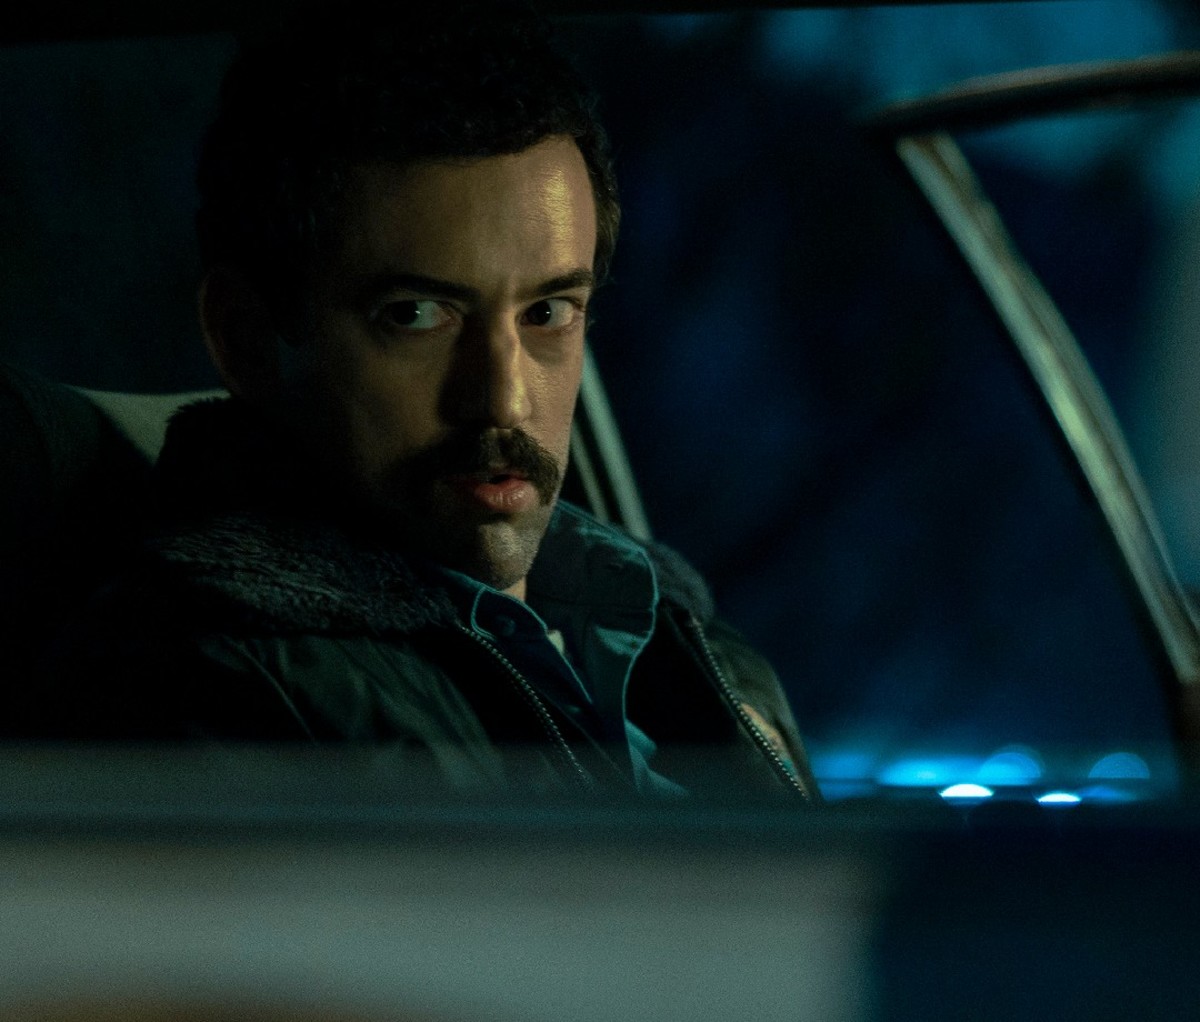 Dark closeup of Narcos: Mexico actor Luis Gerardo Méndez sitting in his cop car at night